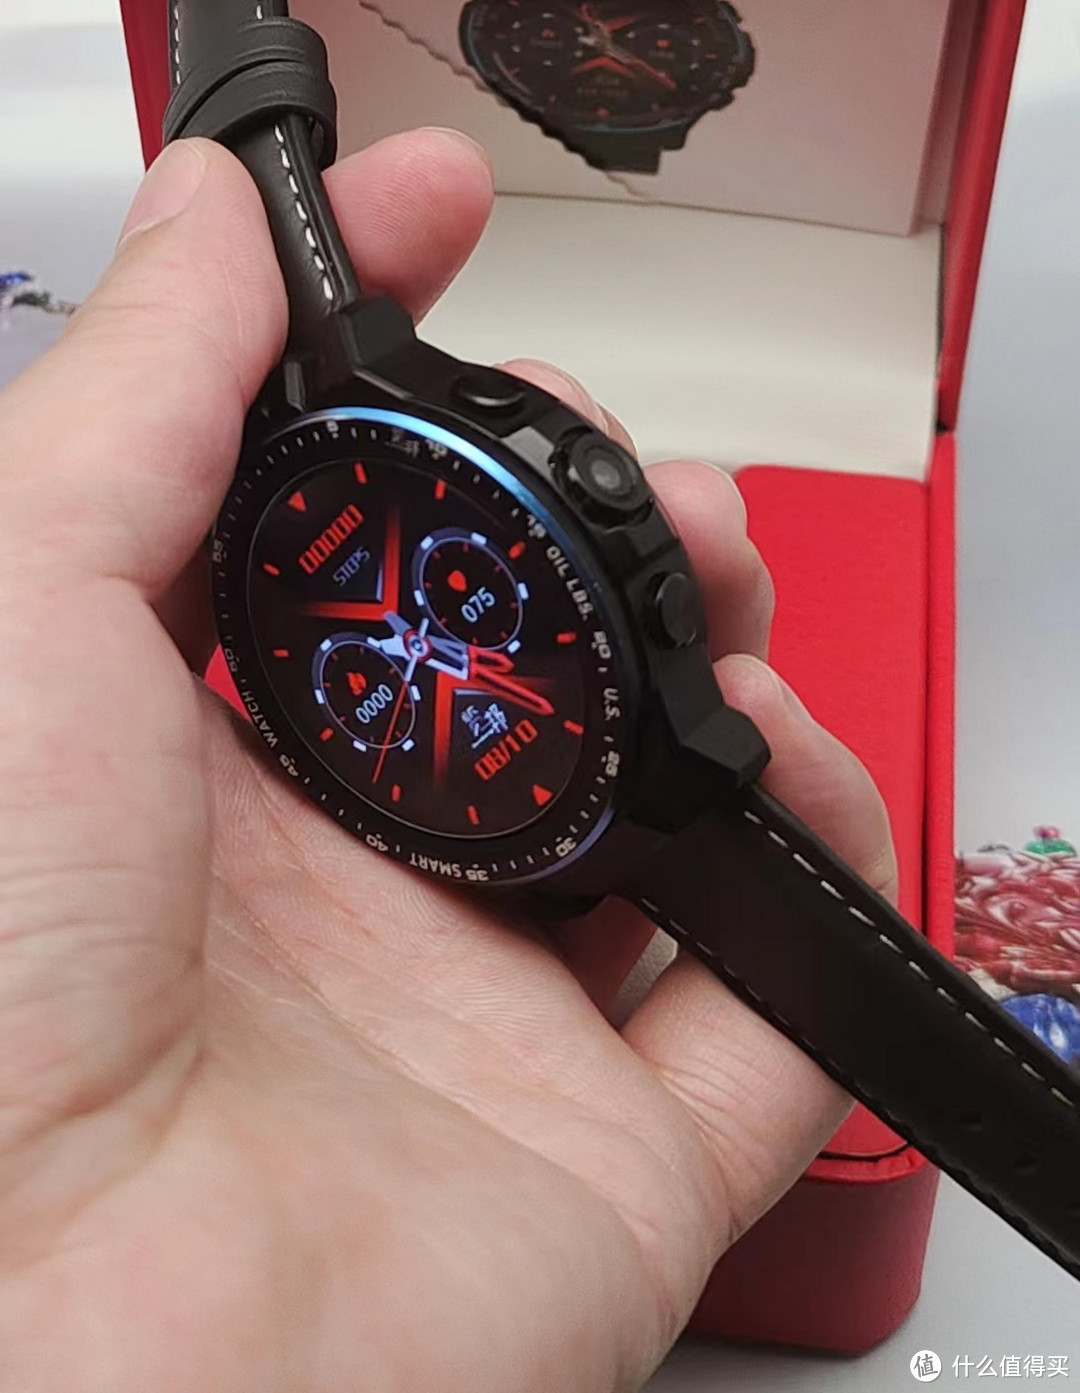 时尚达人必备！览邦WACH MAX-A90手表助你展现独特魅力！